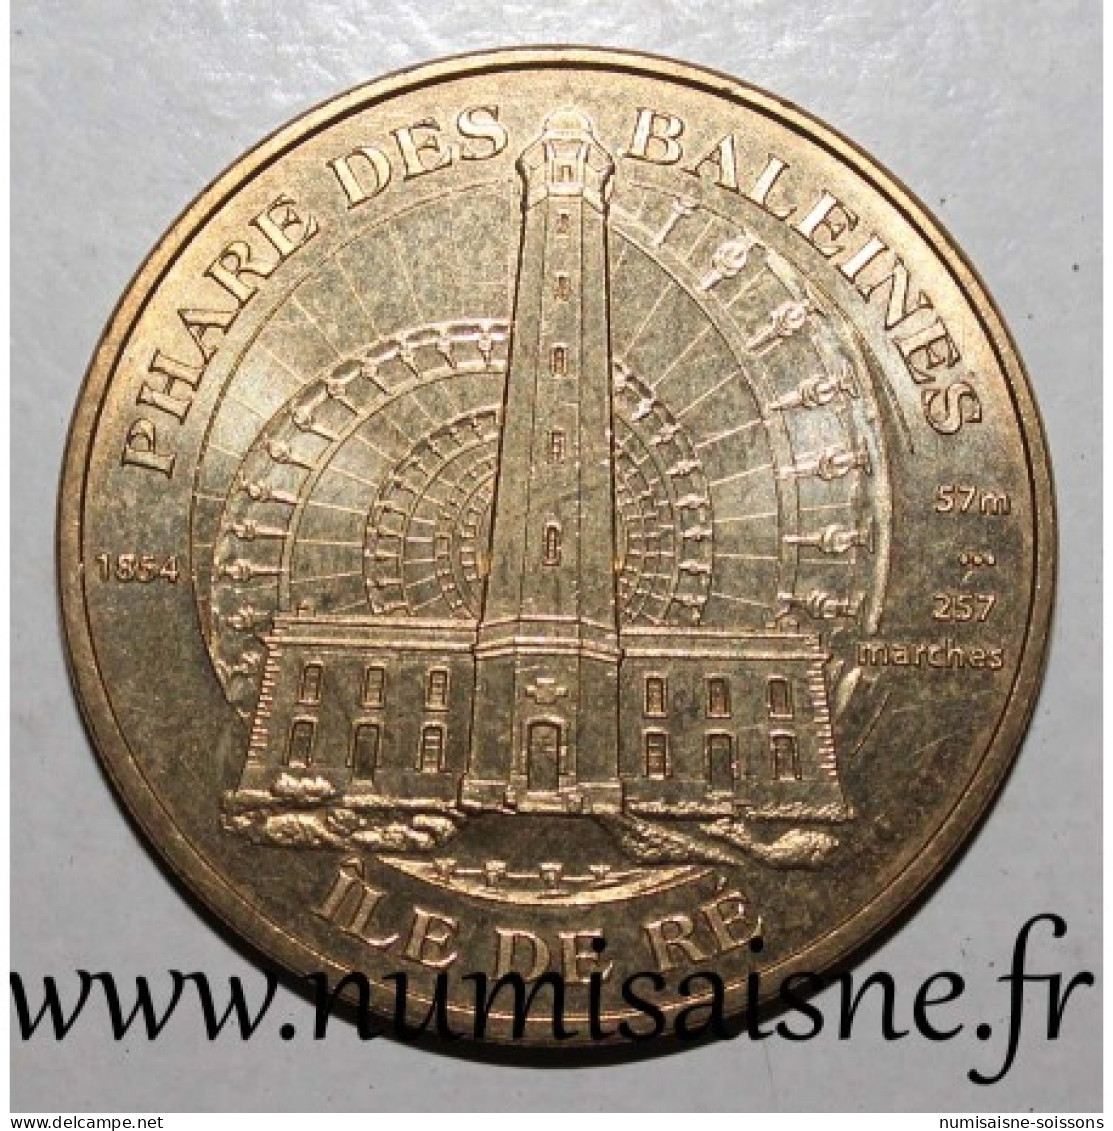 17 - SAINT CLEMENT DES BALEINES - PHARE DES BALEINES - ILE DE RÉ - Monnaie De Paris - 2010 - 2010